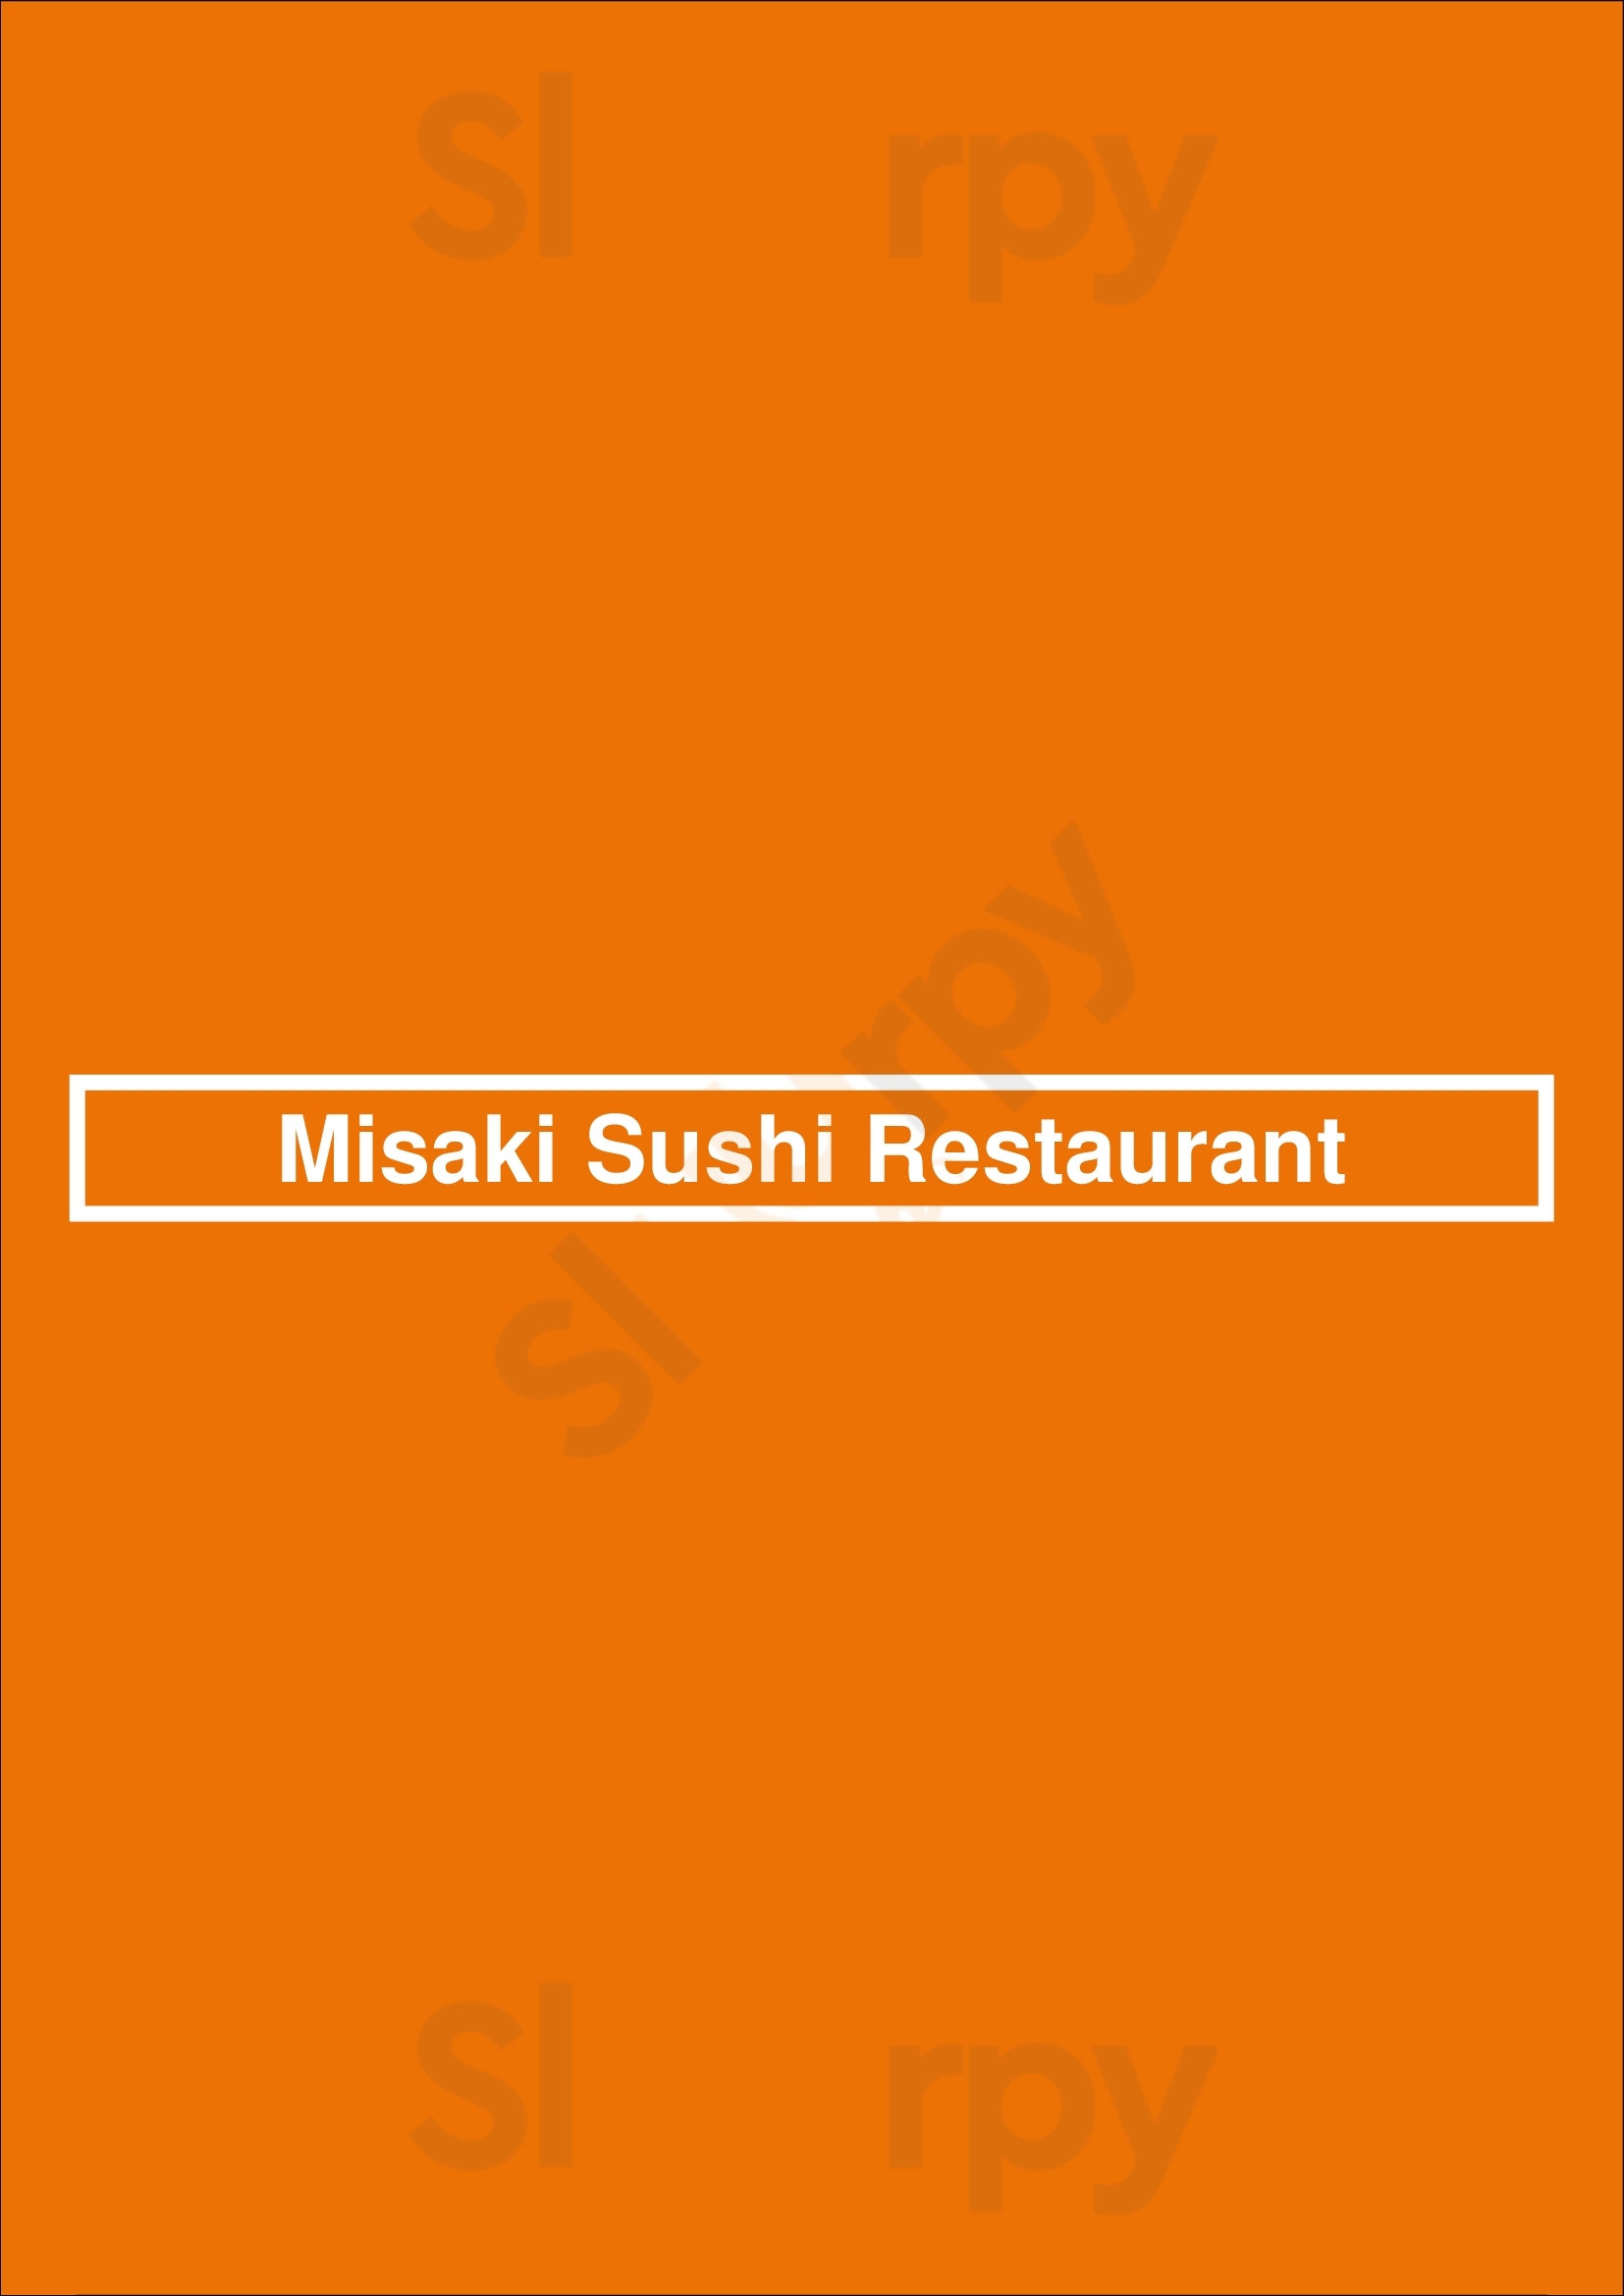 Misaki Sushi Restaurant Hamburg Menu - 1